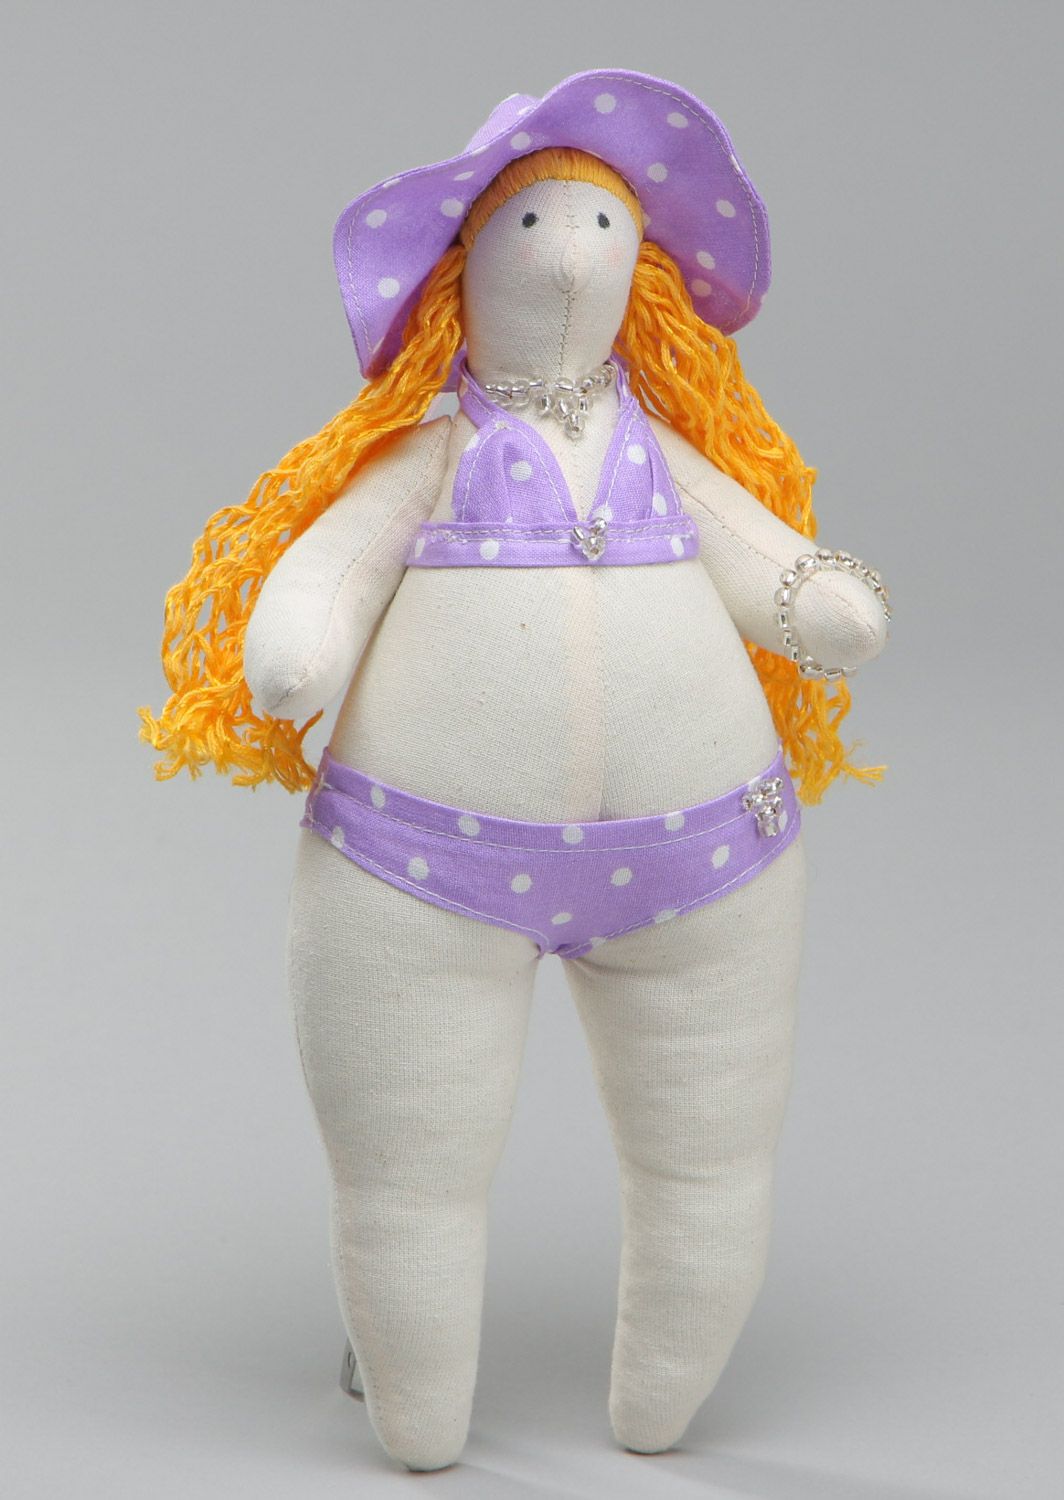 Дизайнерская кукла купальщица из натуральных тканей мягкая ручной работы фото 2